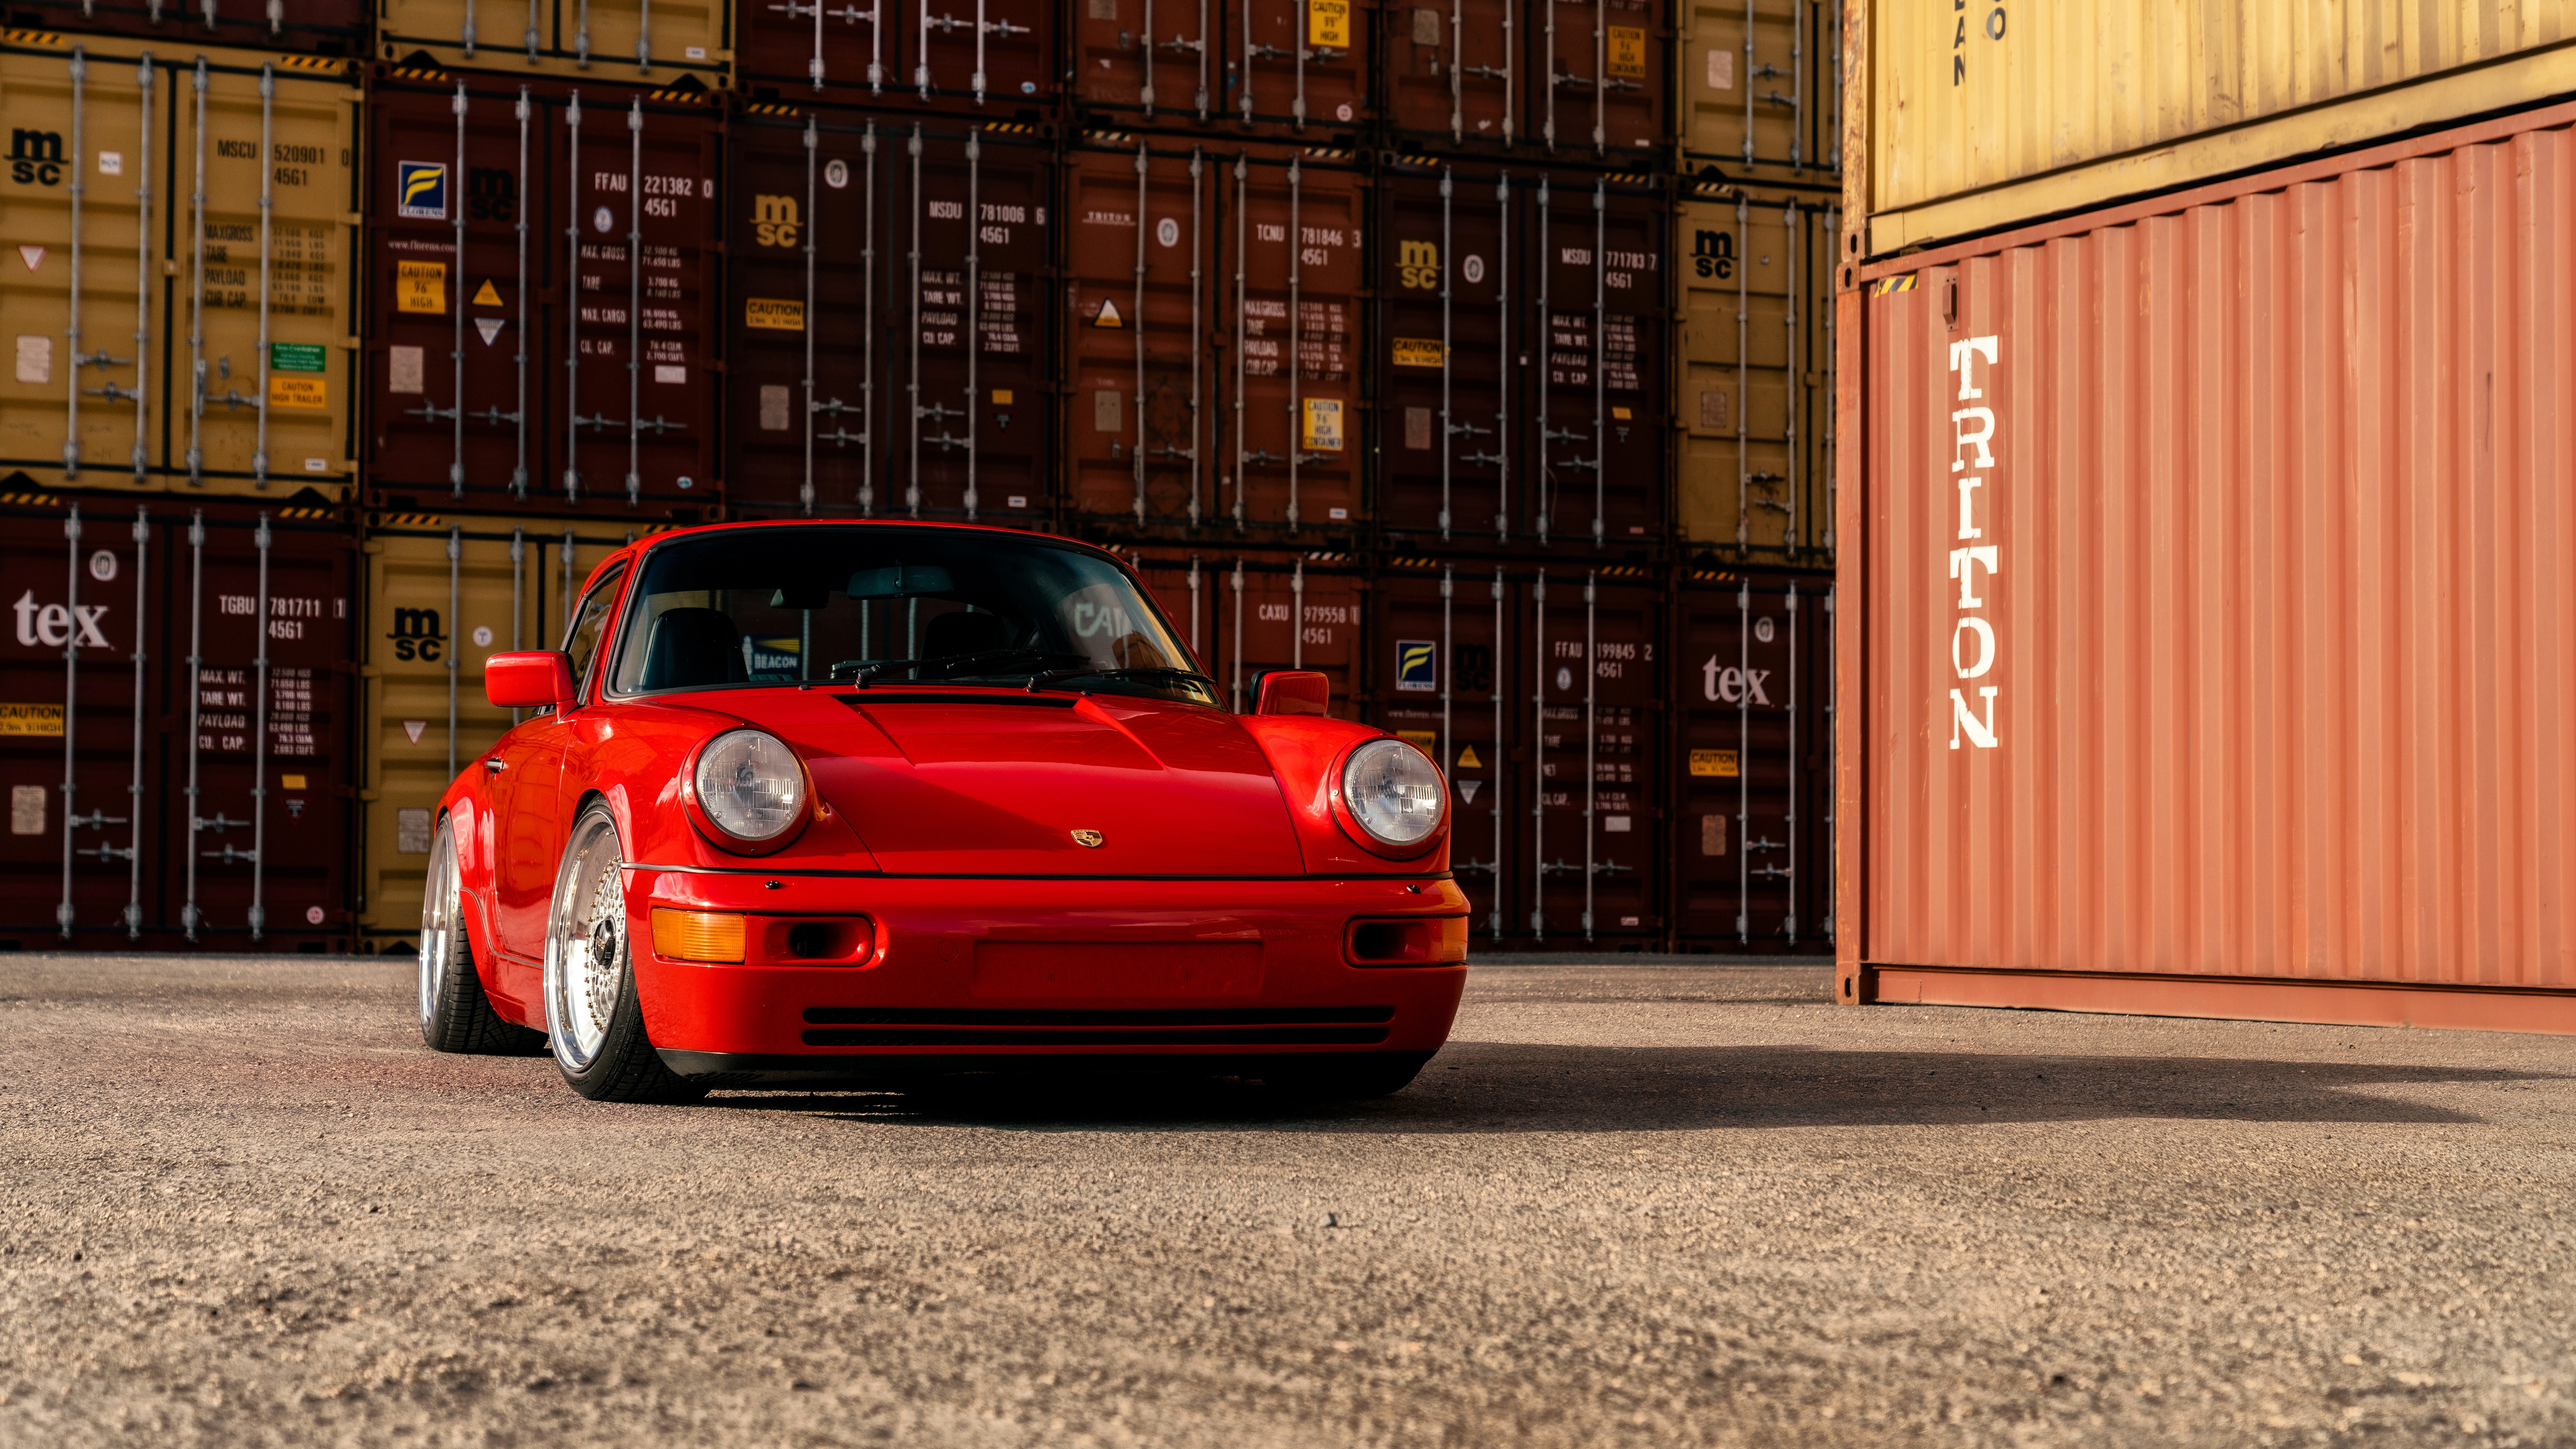 Descargar fondos de escritorio de Porsche 964 Turbo HD